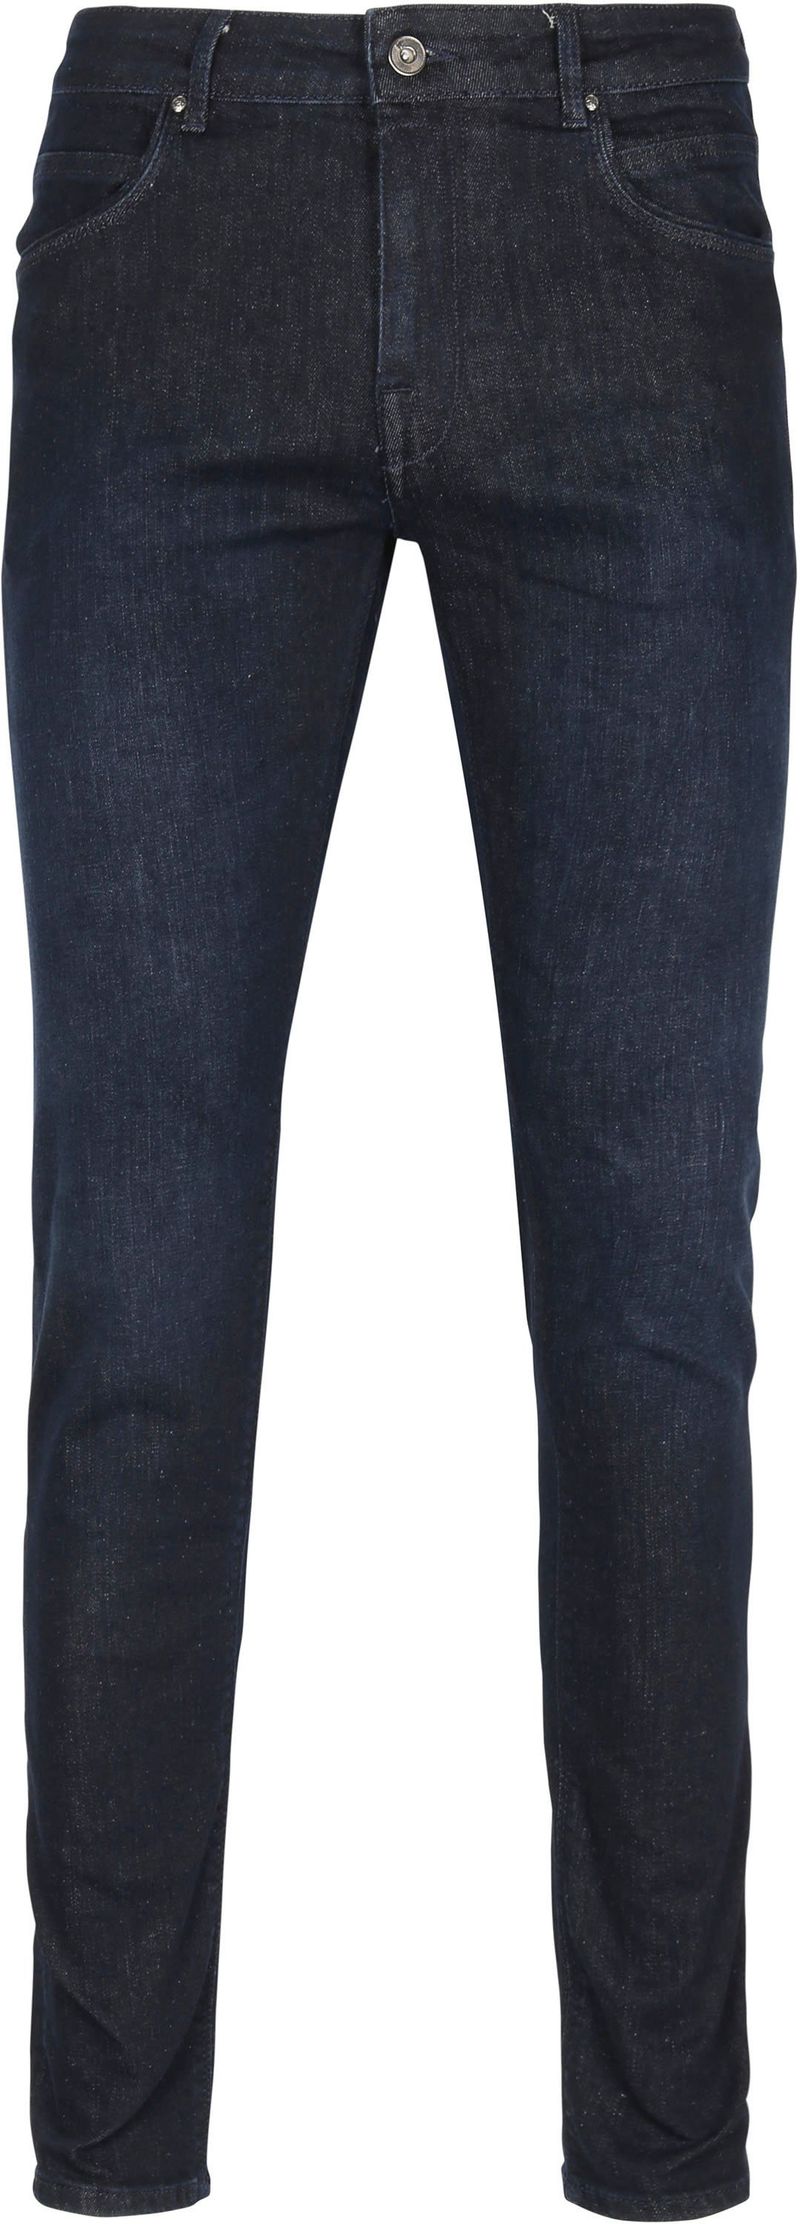 Suitable Hume Jeans Navy Rise - Größe W 32 - L 34 von Suitable